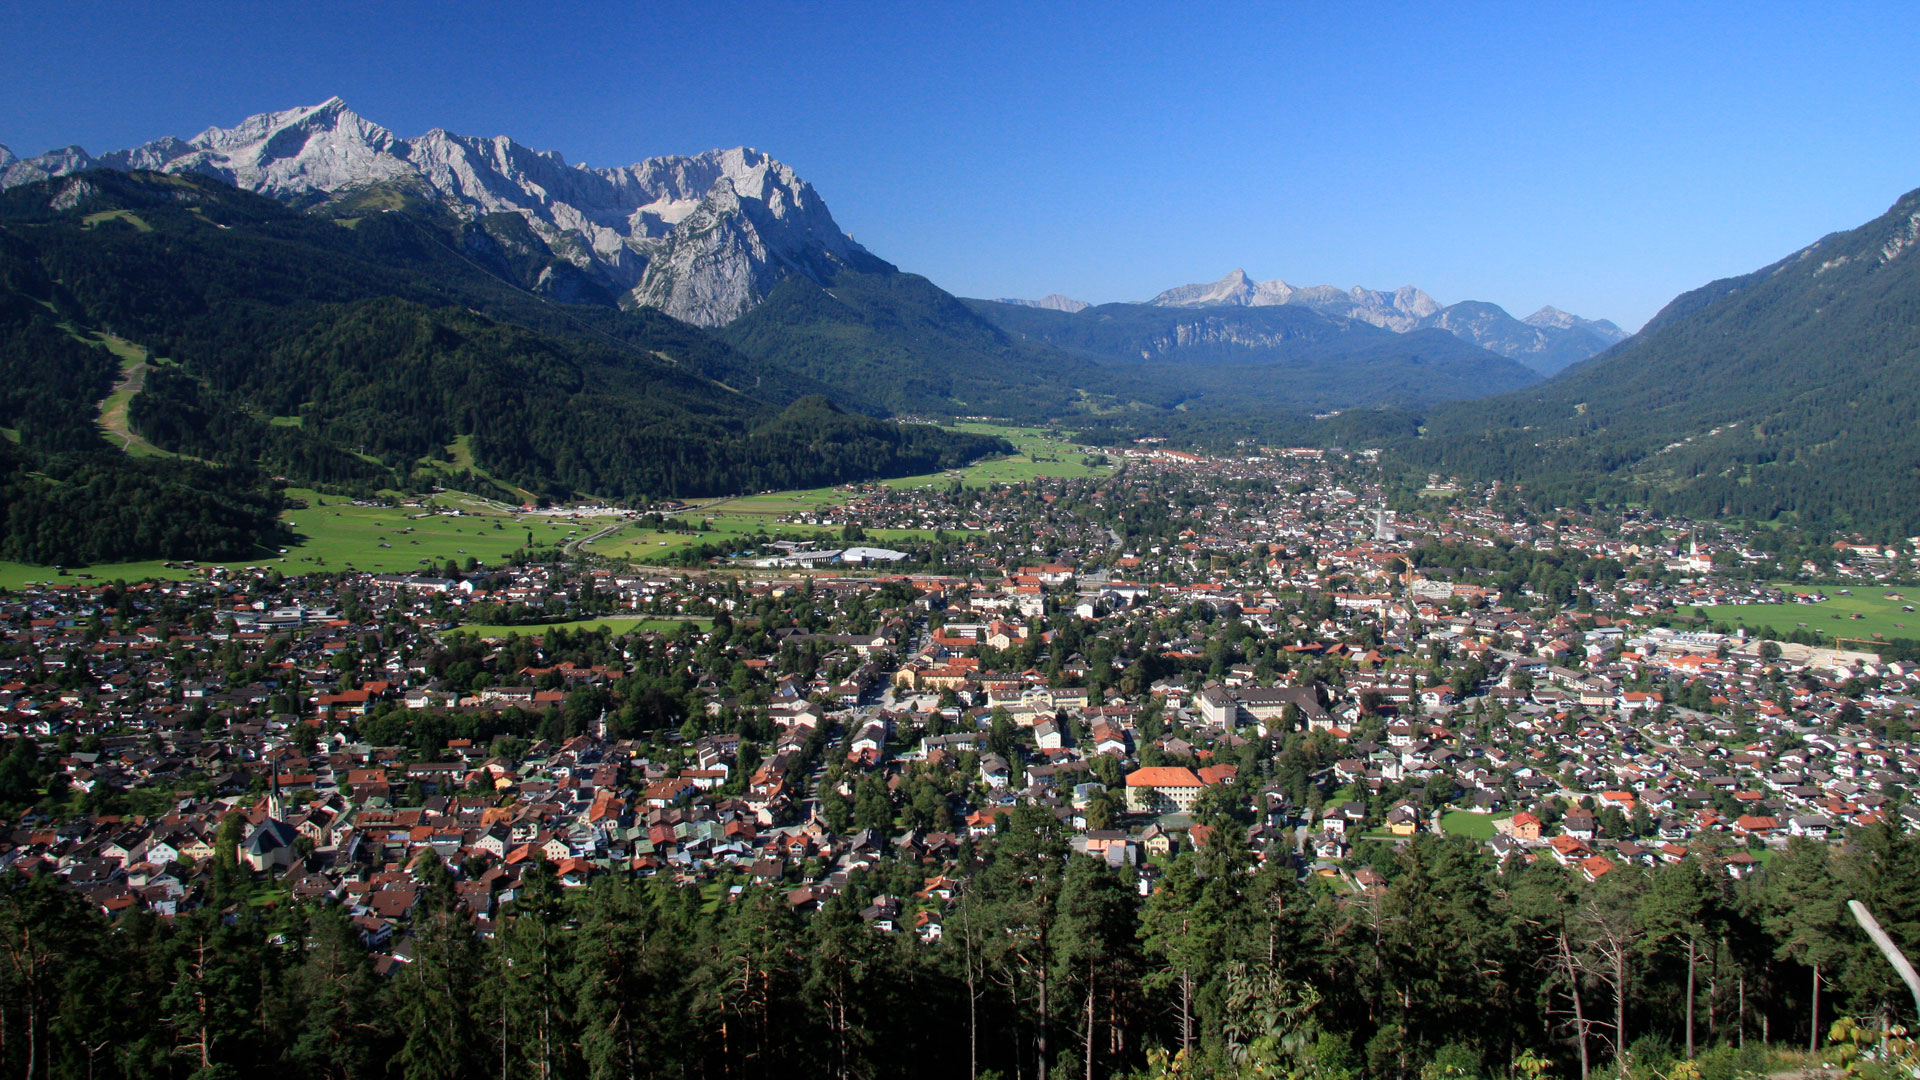 In dem idyllisch gelegenen Ort Garmisch-Partenkirchen kommt es zum Streit: Grund dafür ist das nächtliche Glockengeläut der örtlichen Kirche